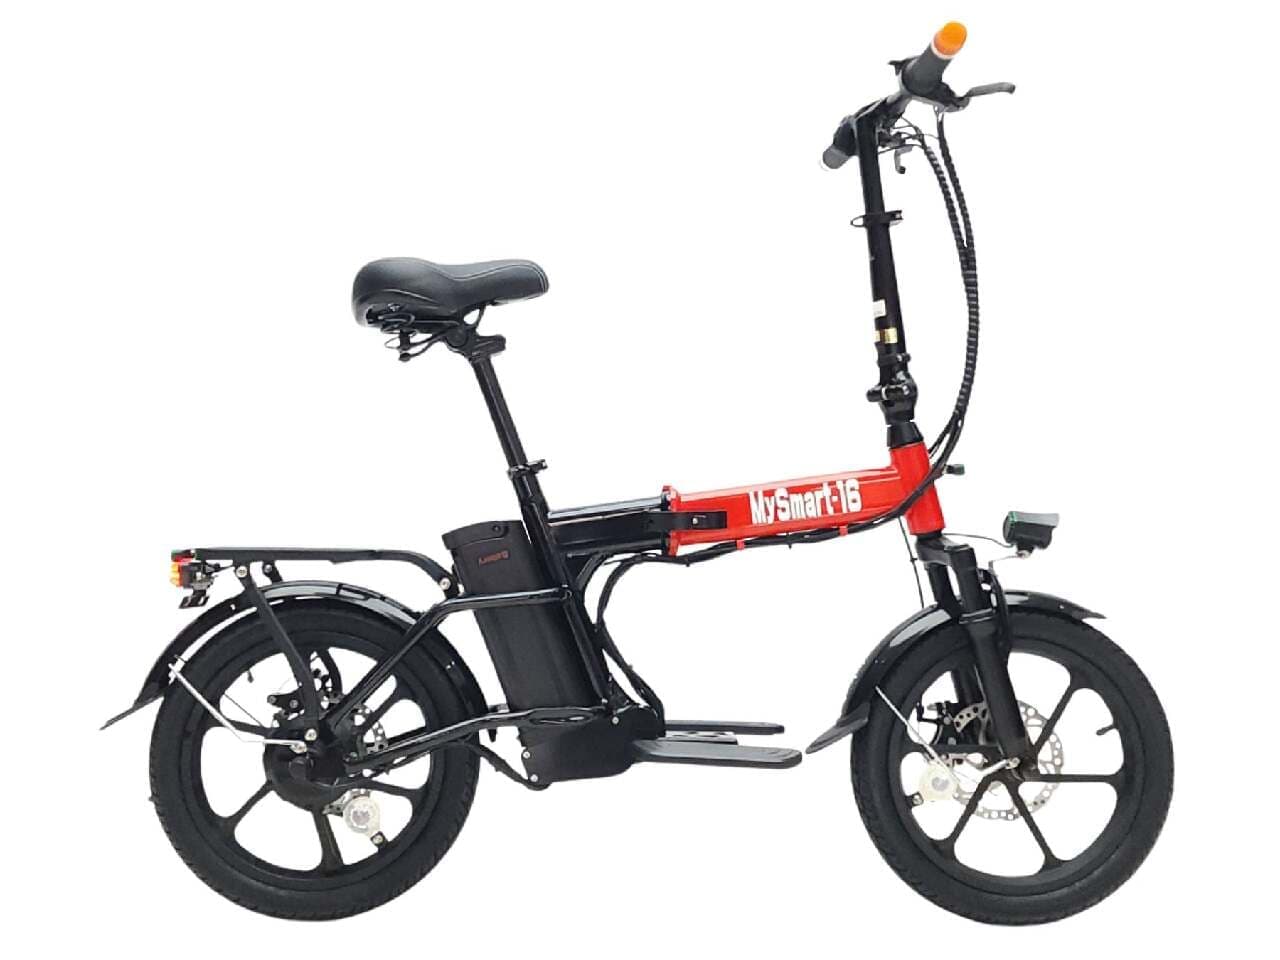 上山商会より、都市移動を効率化するフル電動折り畳み自転車「MySmart16」発売、全国の店舗で取り扱い募集開始 画像2